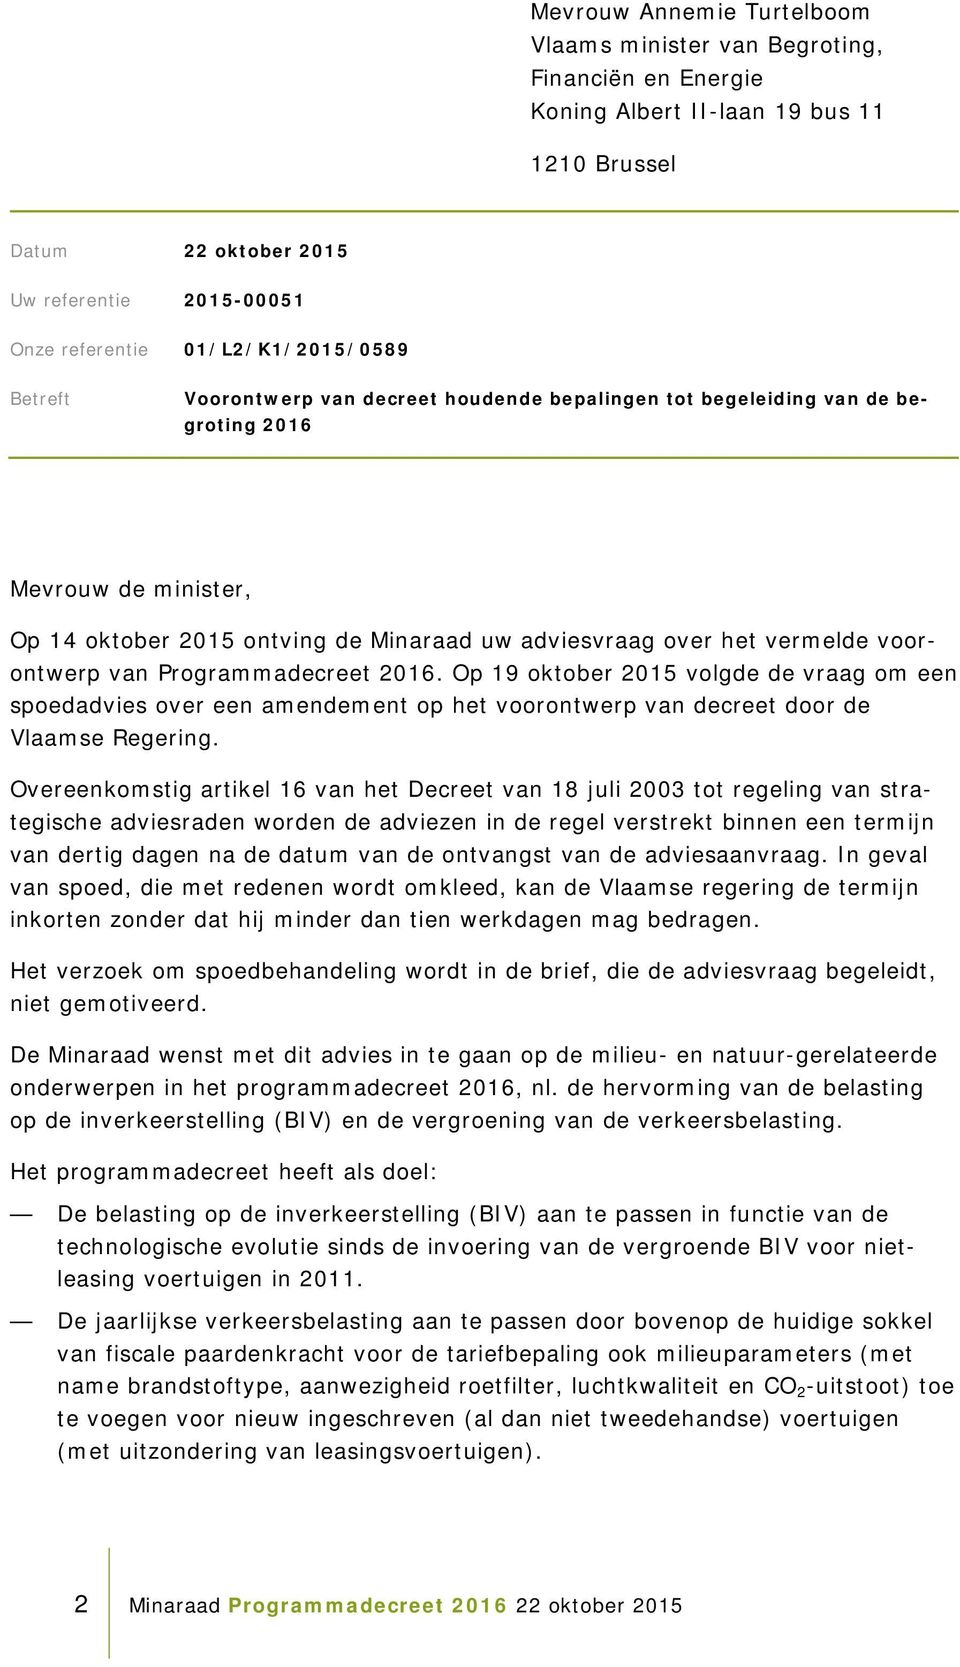 voorontwerp van Programmadecreet 2016. Op 19 oktober 2015 volgde de vraag om een spoedadvies over een amendement op het voorontwerp van decreet door de Vlaamse Regering.